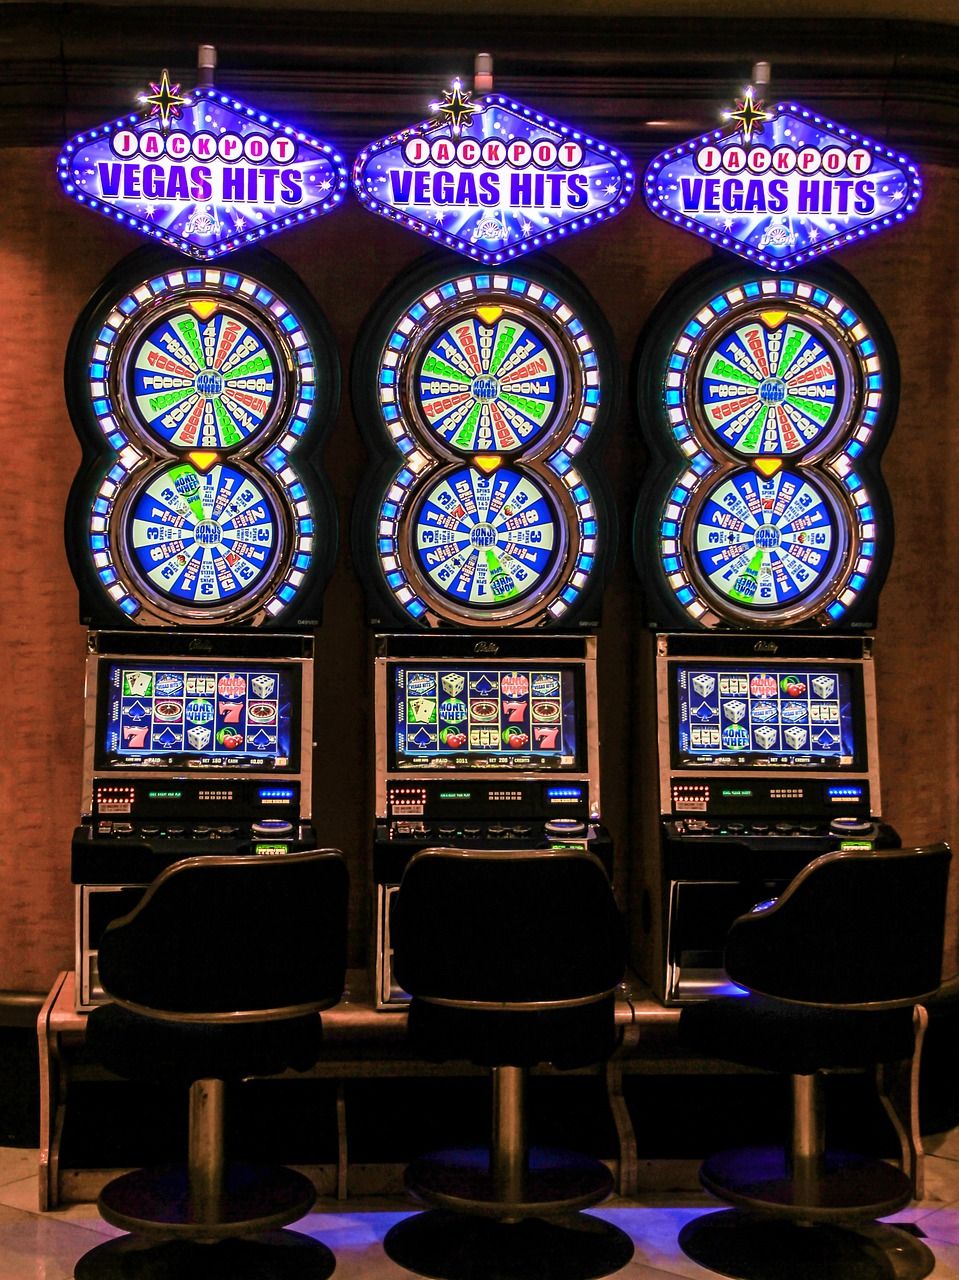 Spil Bridge Gratis: Udforsk Casino-verdenen uden udgifter eller bekymringer